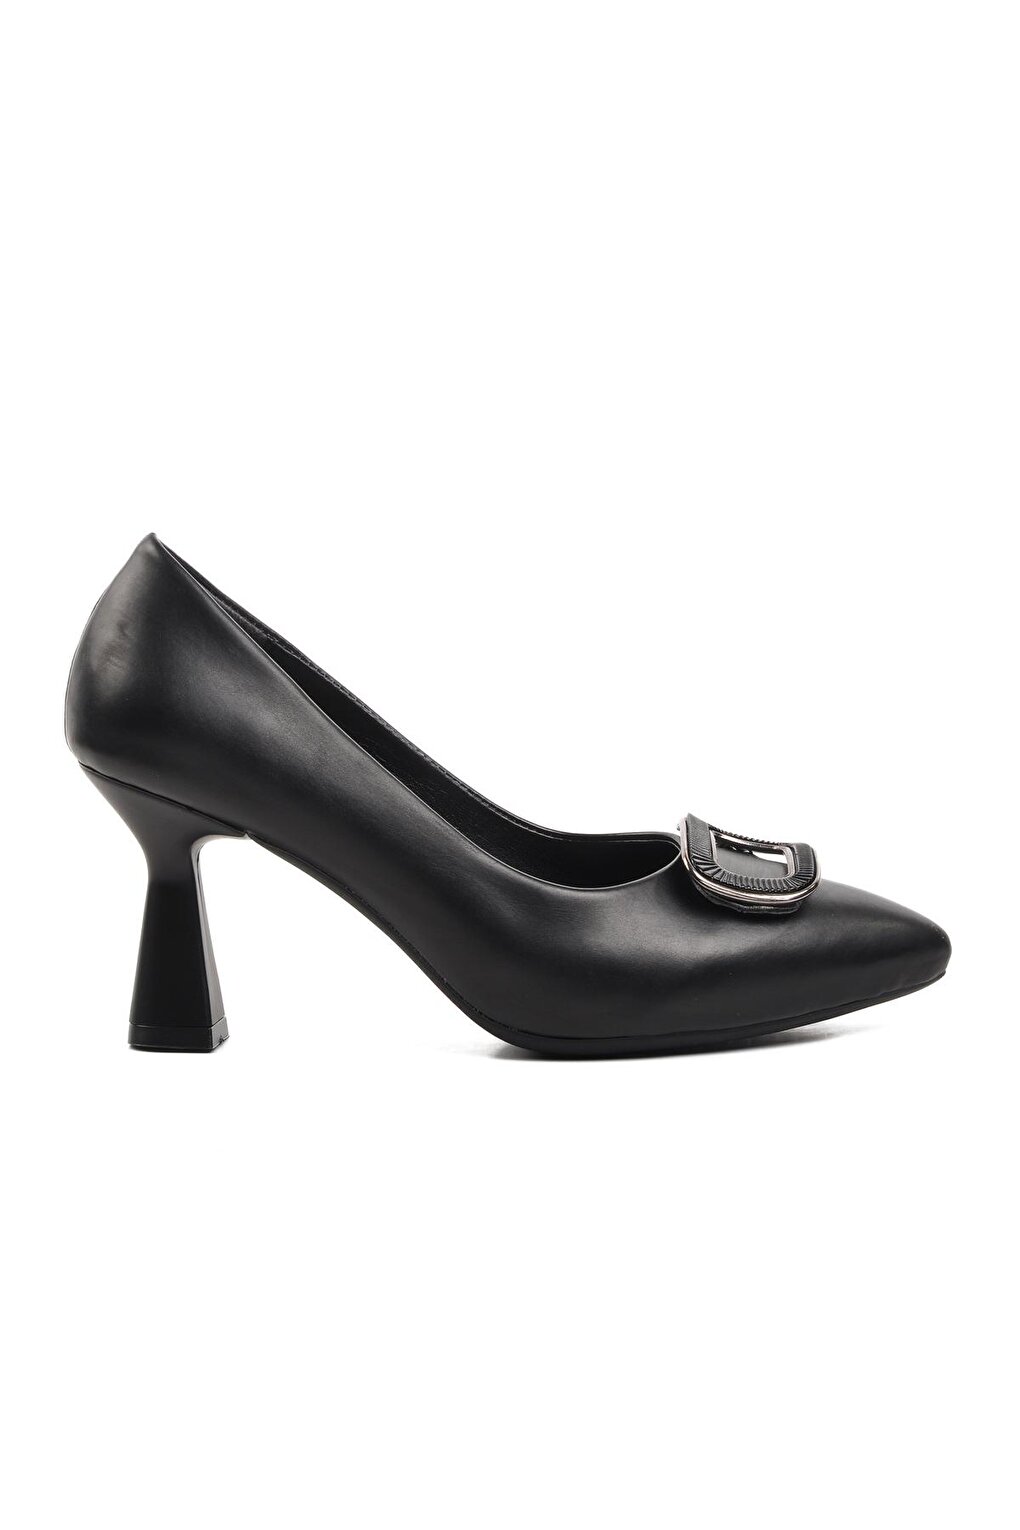 289200 Черные женские туфли на каблуке Ayakmod цена и фото